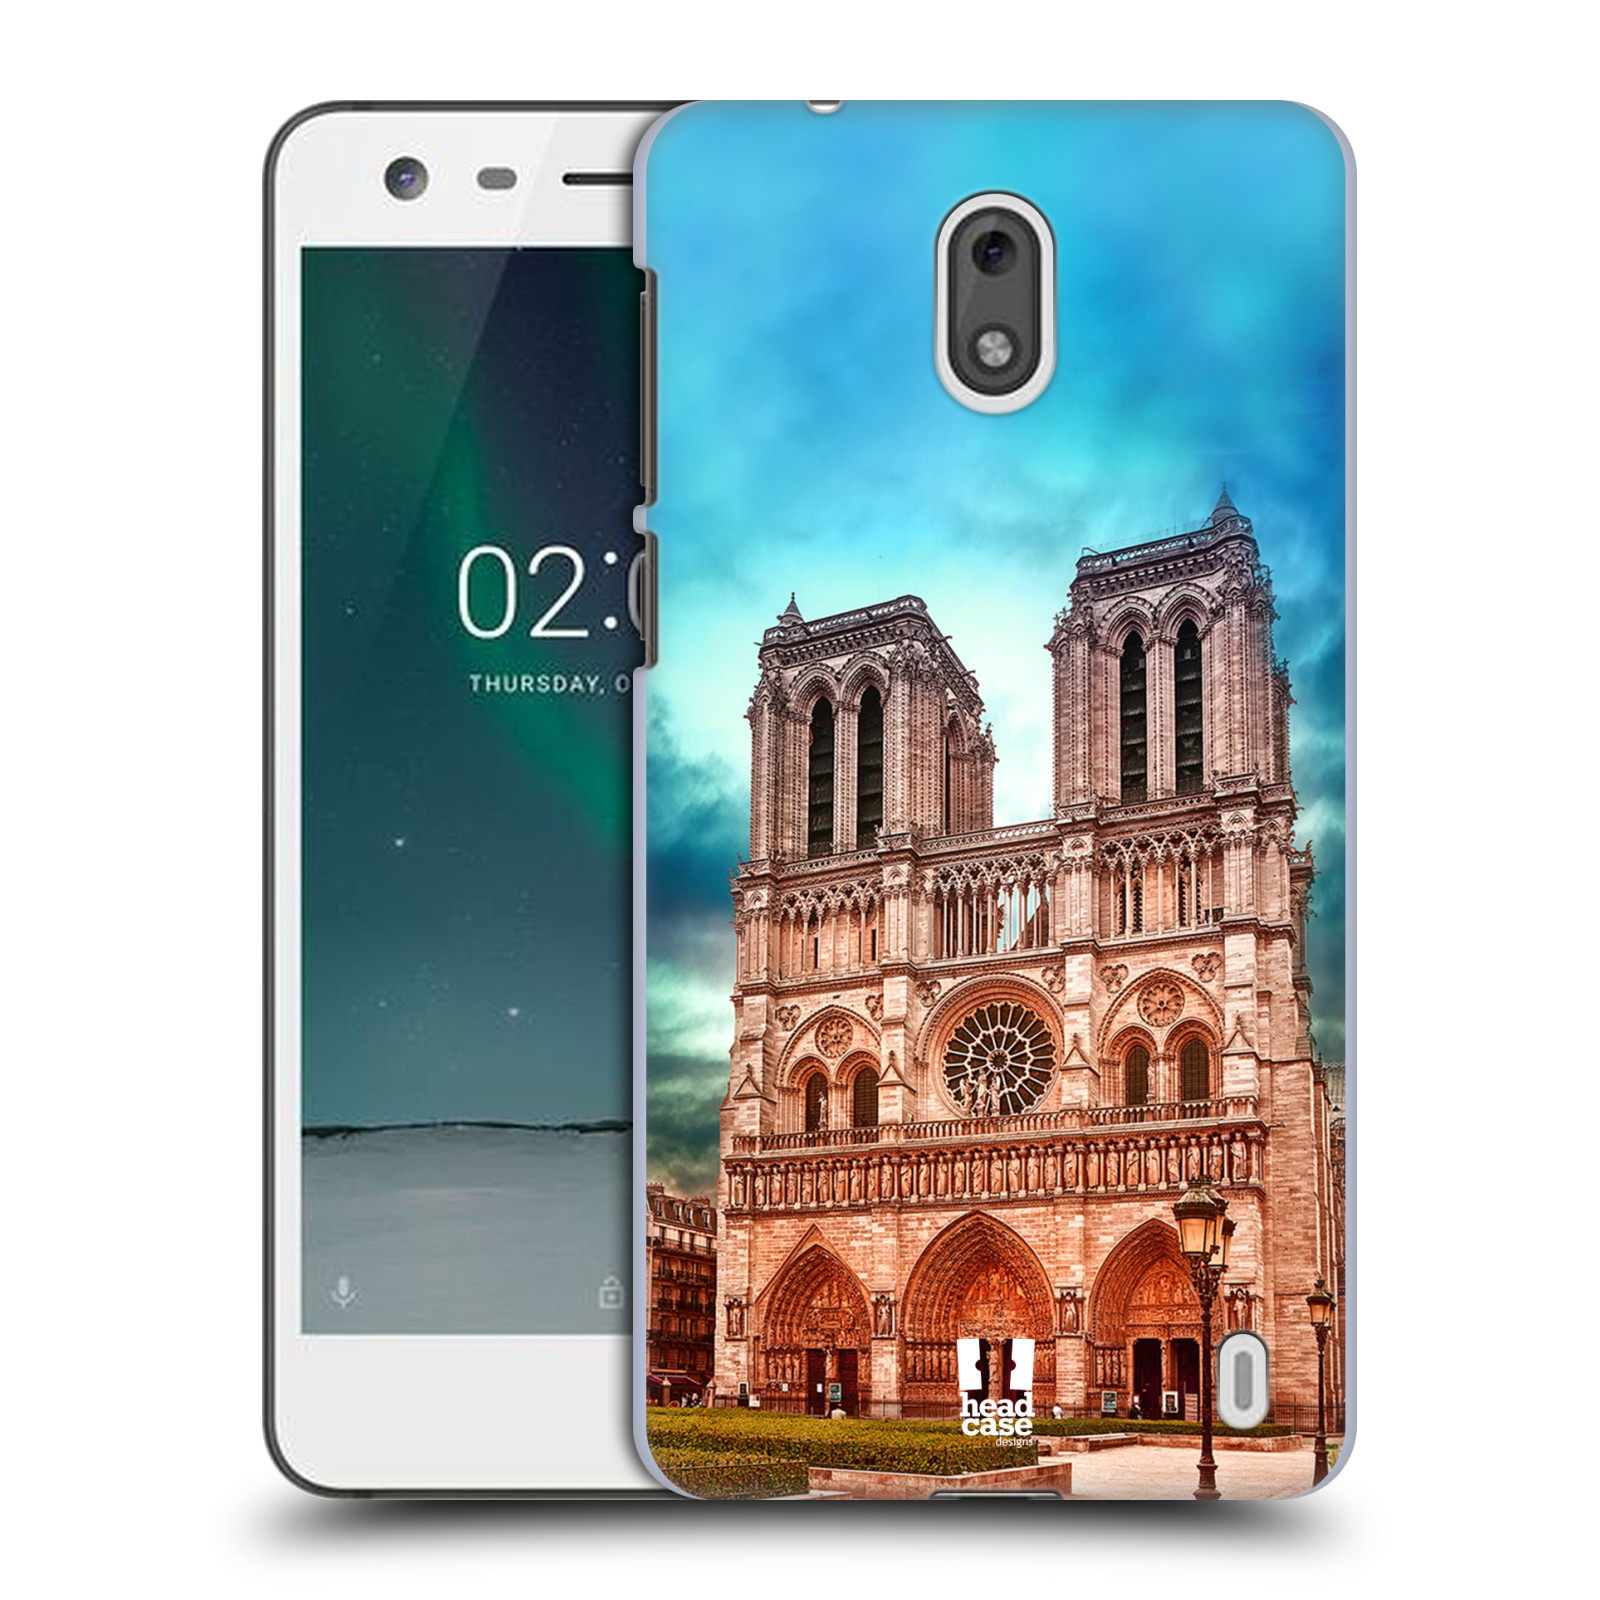 Pouzdro na mobil Nokia 2 - HEAD CASE - historická místa katedrála Notre Dame